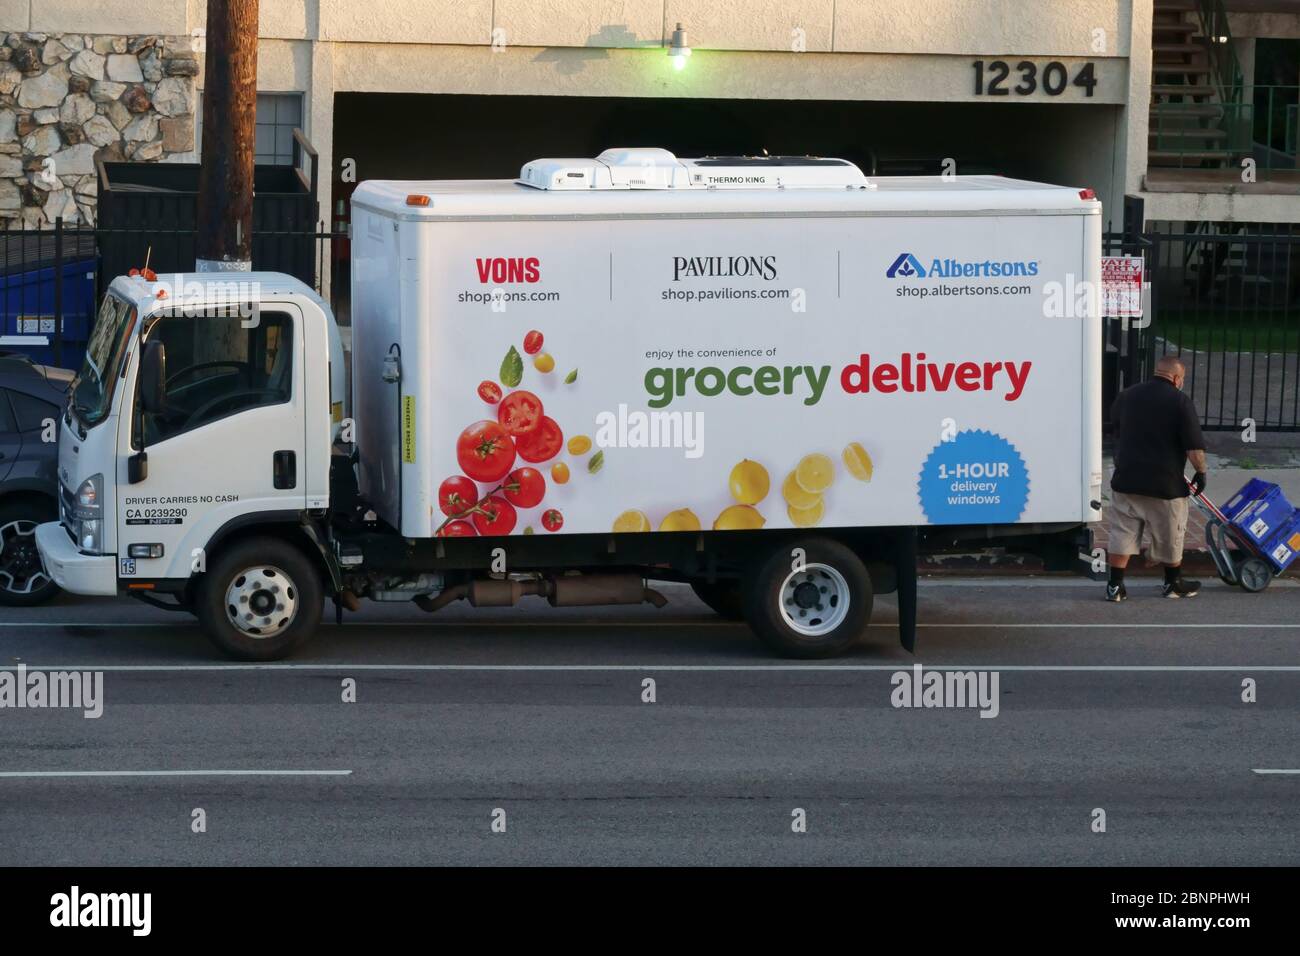 Los Angeles, CA / USA - 8 maggio 2020: Un Vons, Pavilions, e Albertsons negozi di alimentari di consegna camion è mostrato parcheggiato su una strada della città. Foto Stock